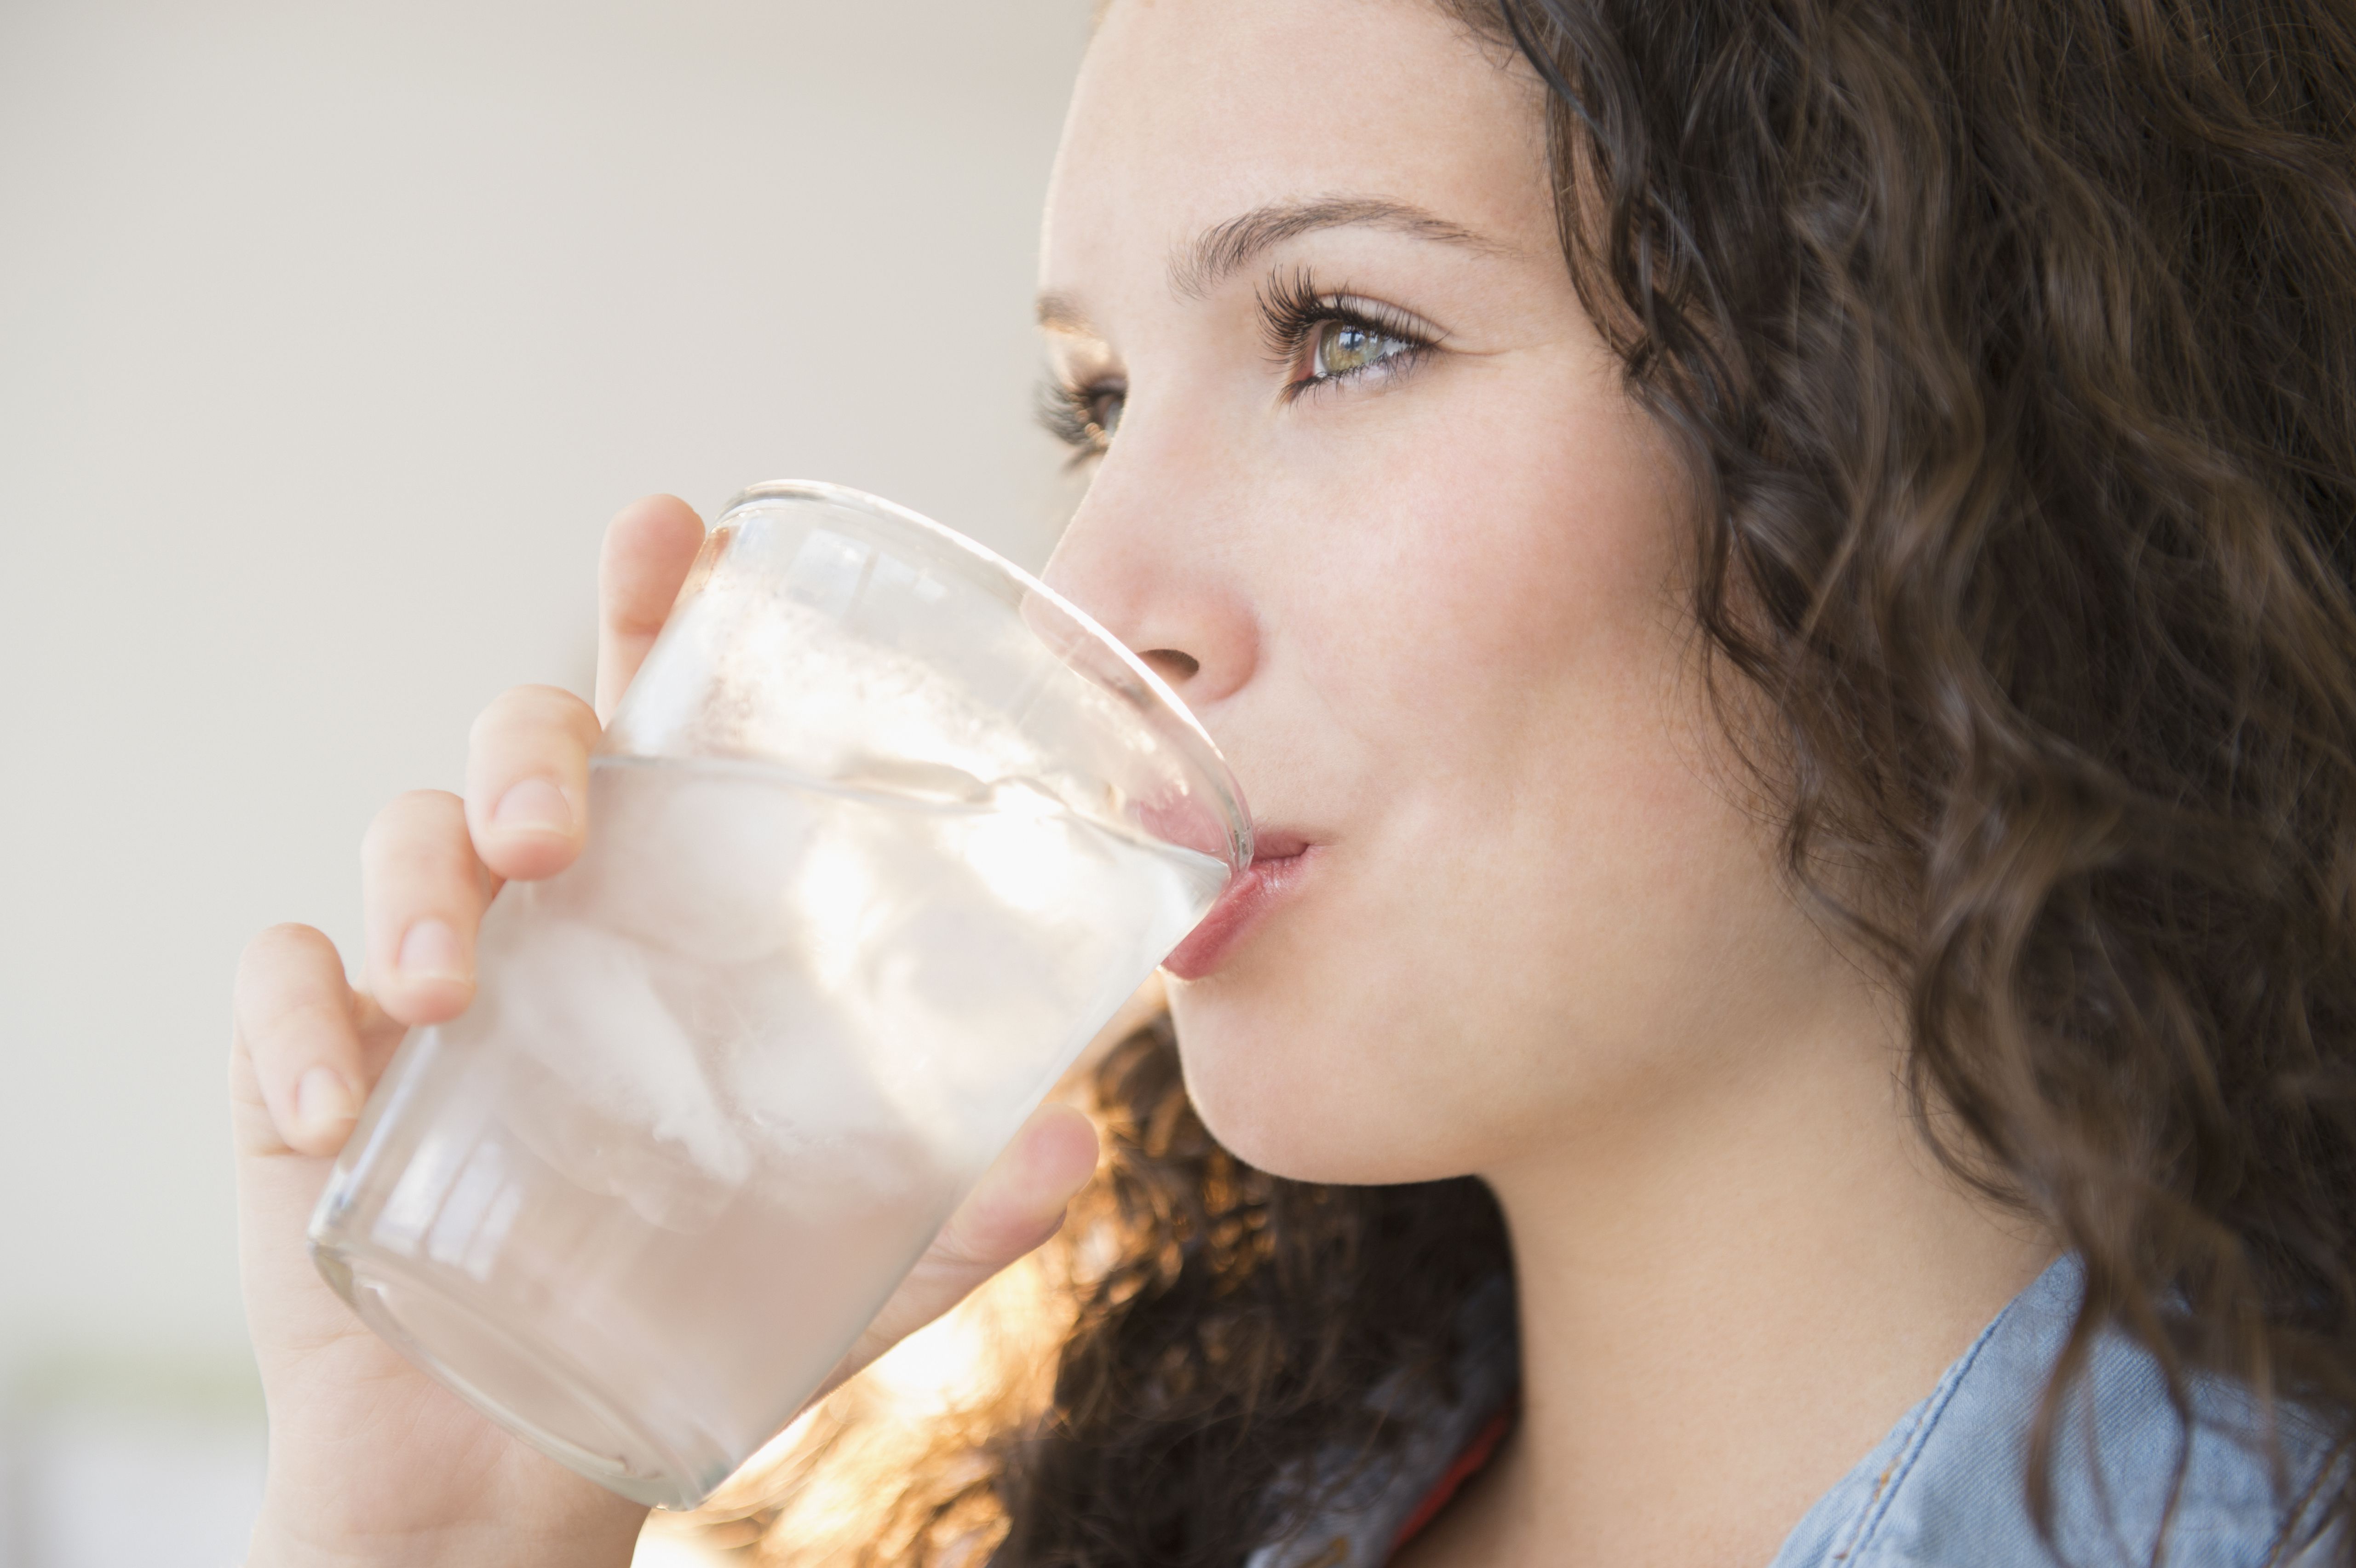 Выпейте стакан воды 1. Питье воды. Девушка пьет воду. Стакан воды. Девушка пьет воду из стакана.